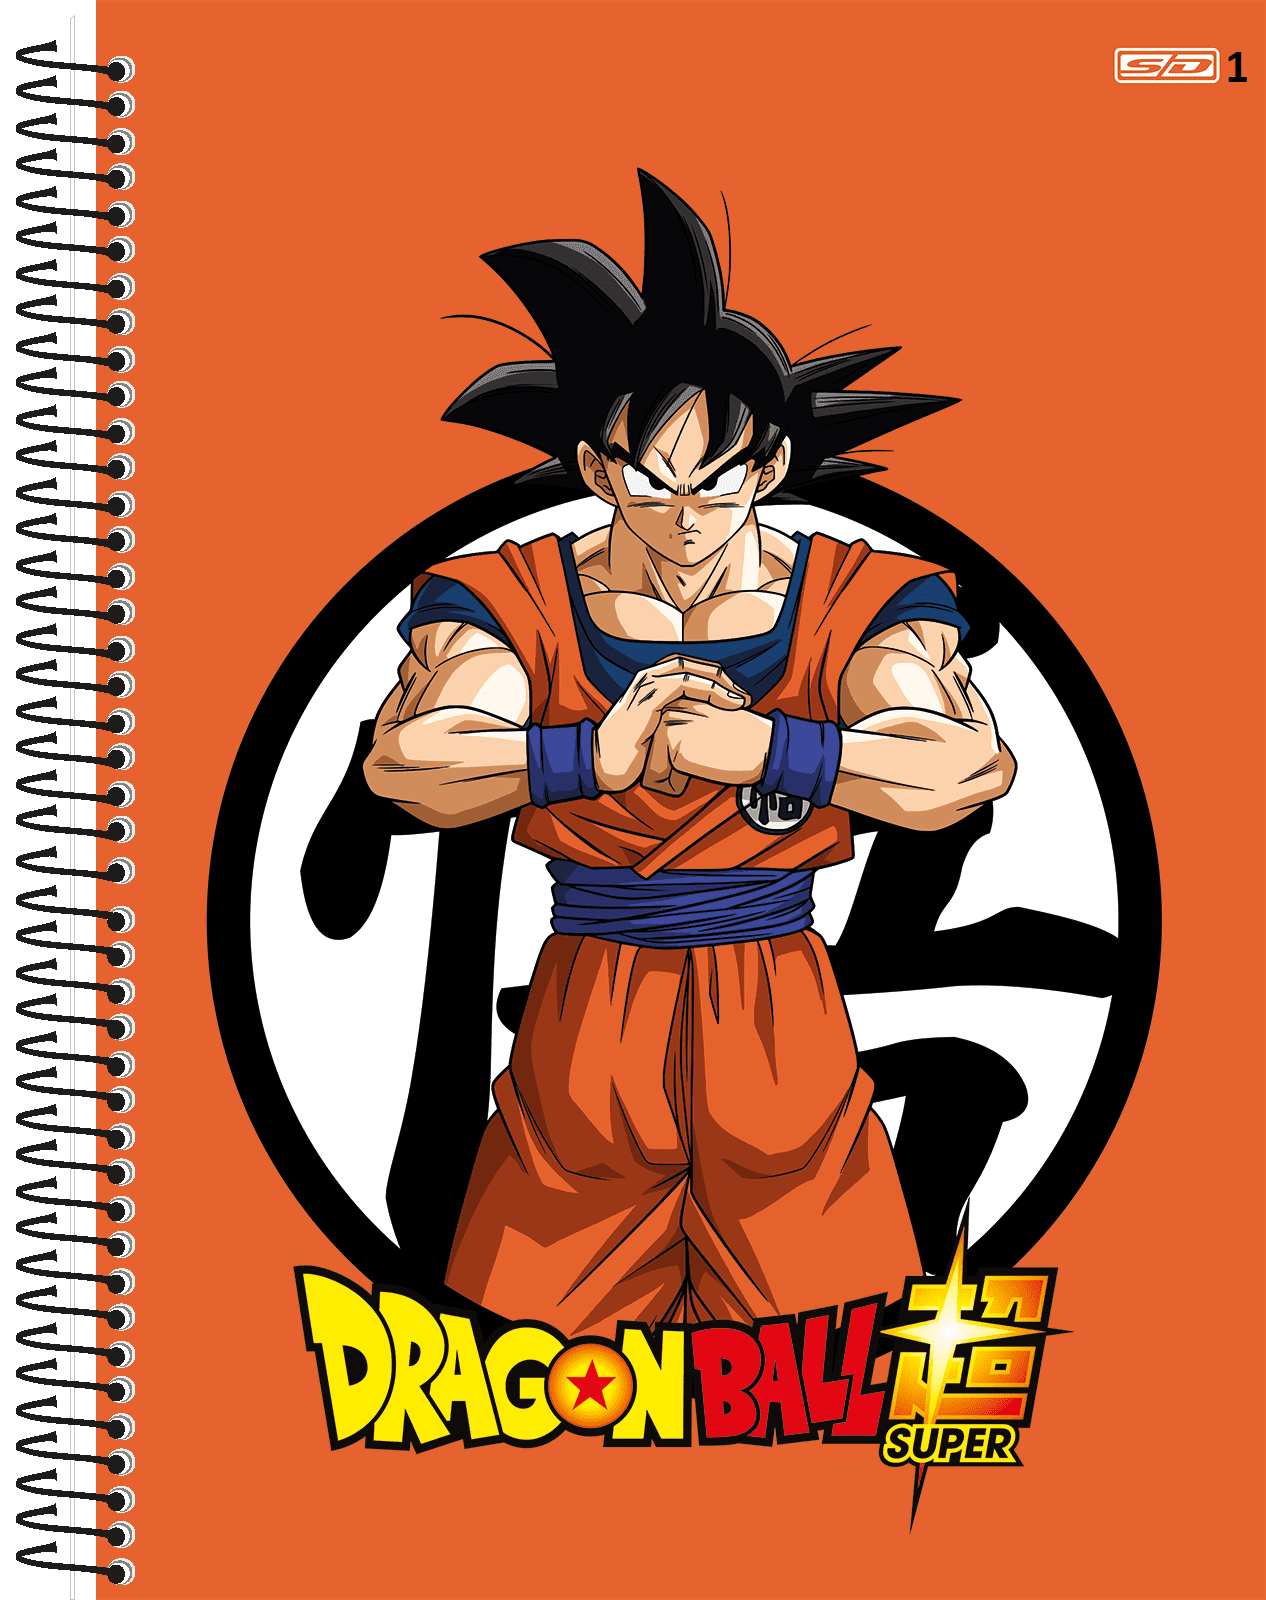 Goku Criança Desenho a lápis